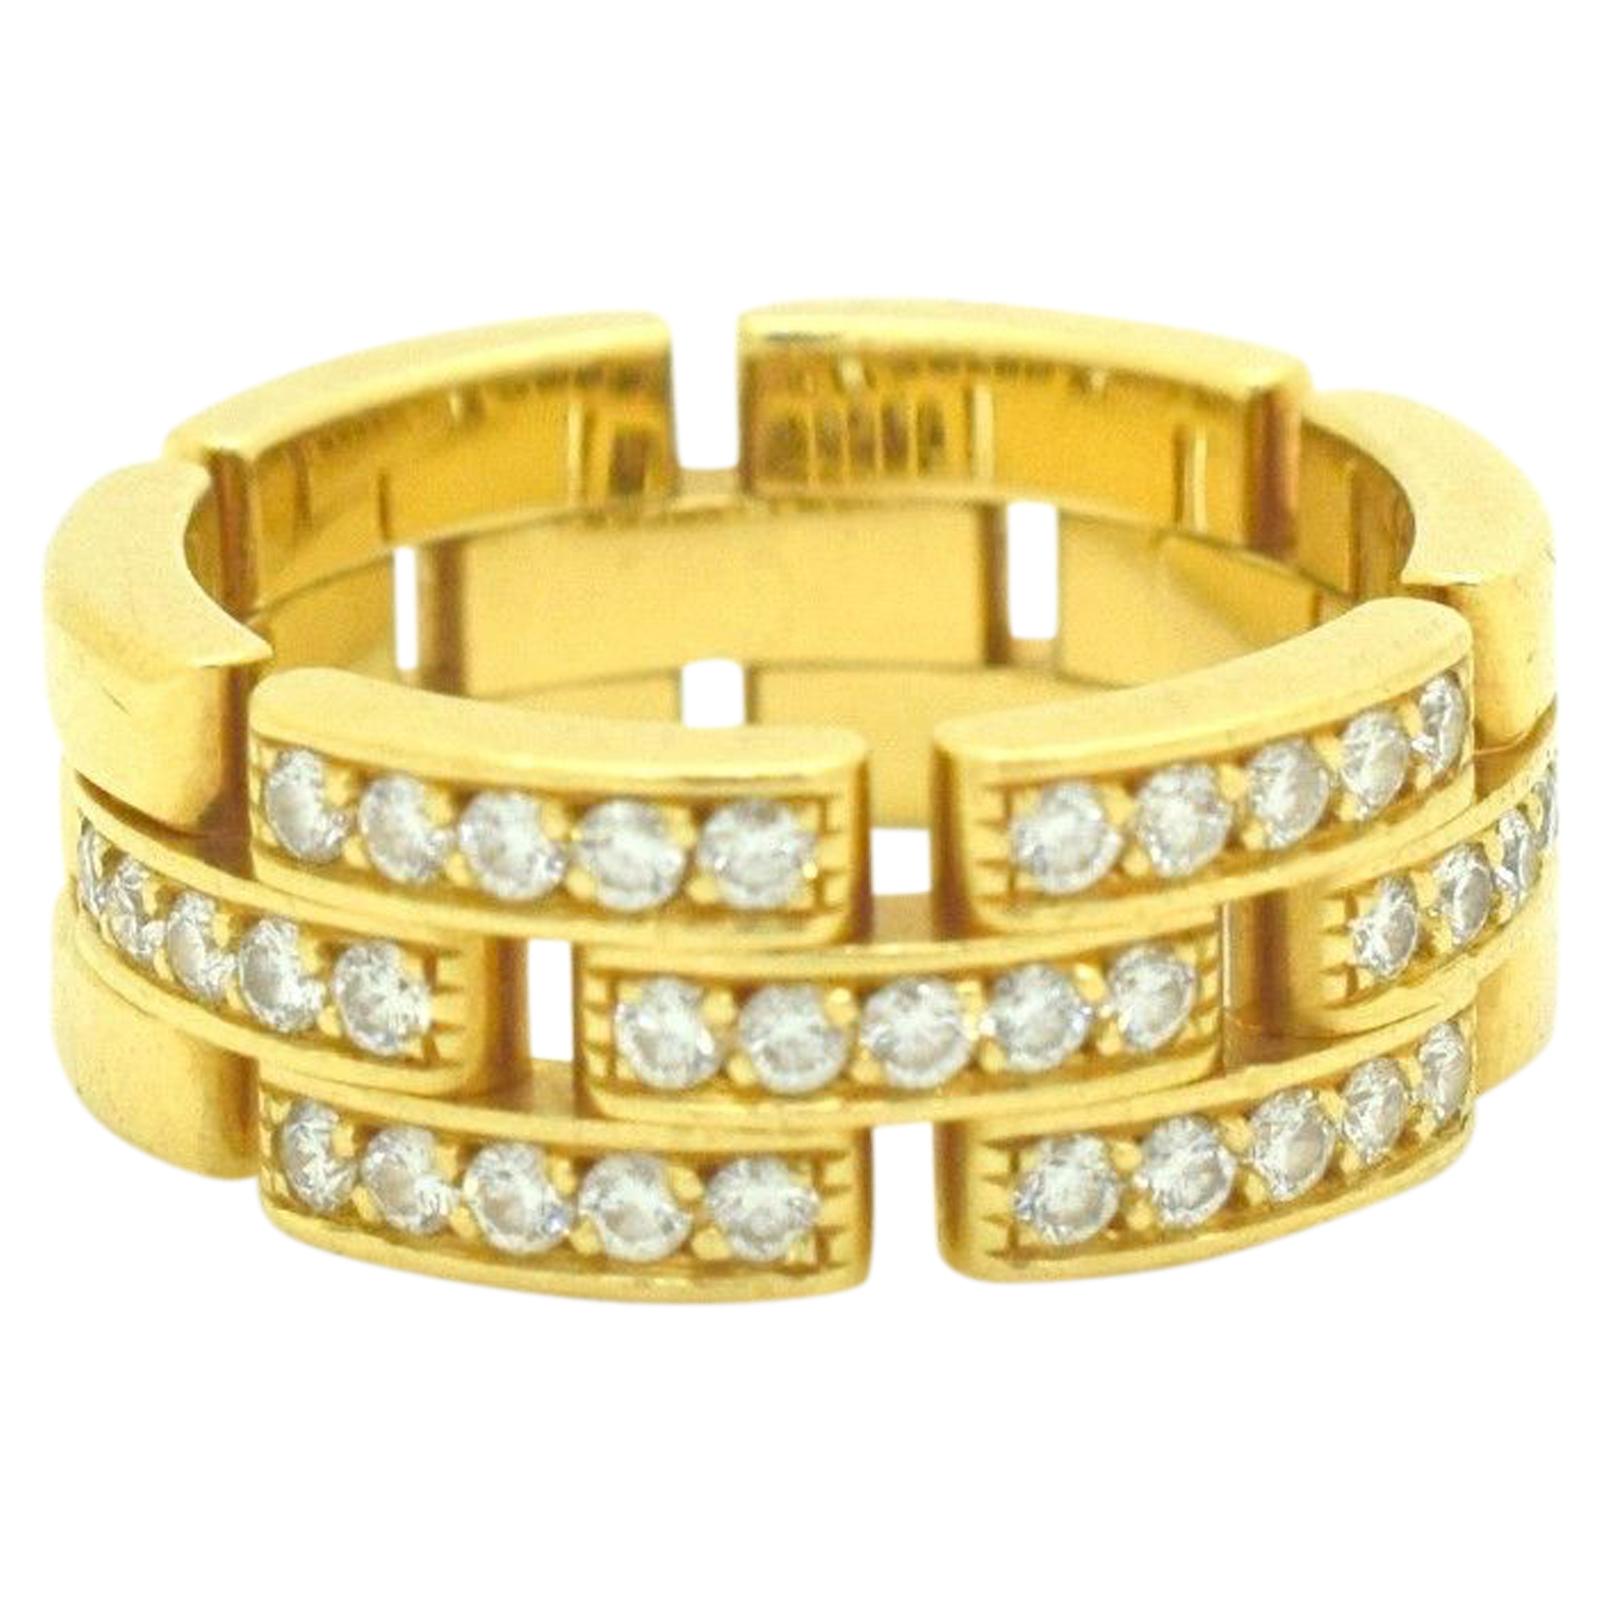 Cartier Maillon Panthère Diamond Ring 18 Karat Yellow Gold